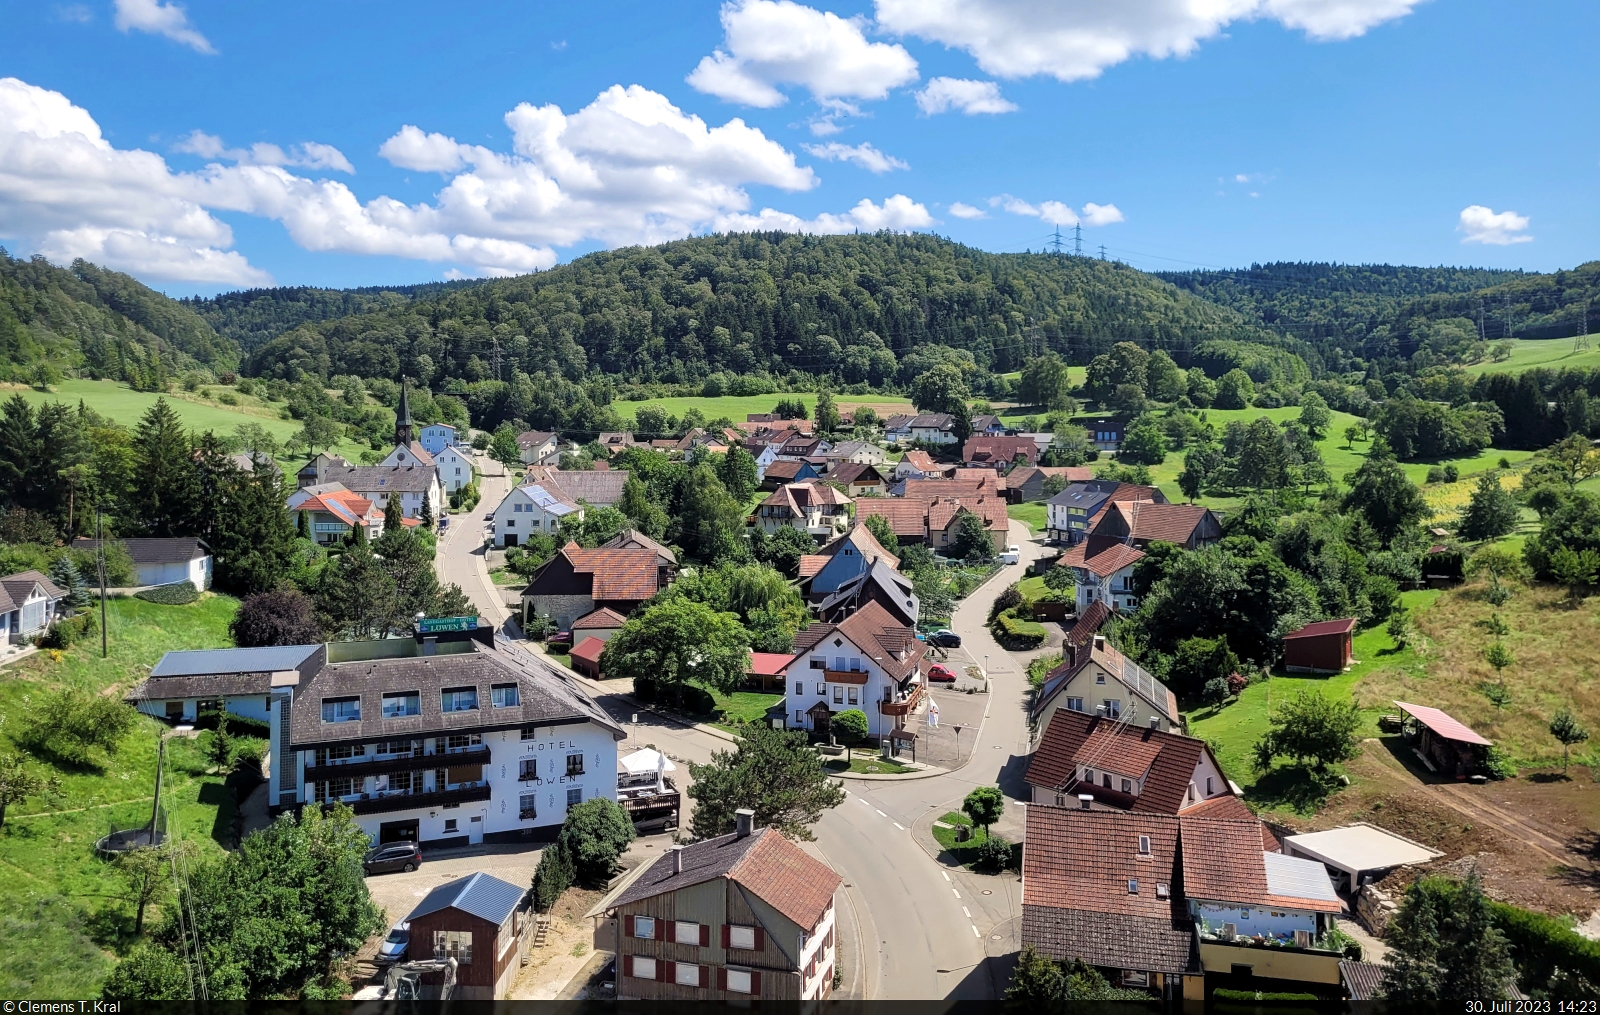 Blick auf den Blumberger Ortsteil Epfenhofen whrend eines Ausflugs mit der Sauschwnzlebahn, die hier ein Viadukt befhrt.

🕓 30.7.2023 | 14:23 Uhr